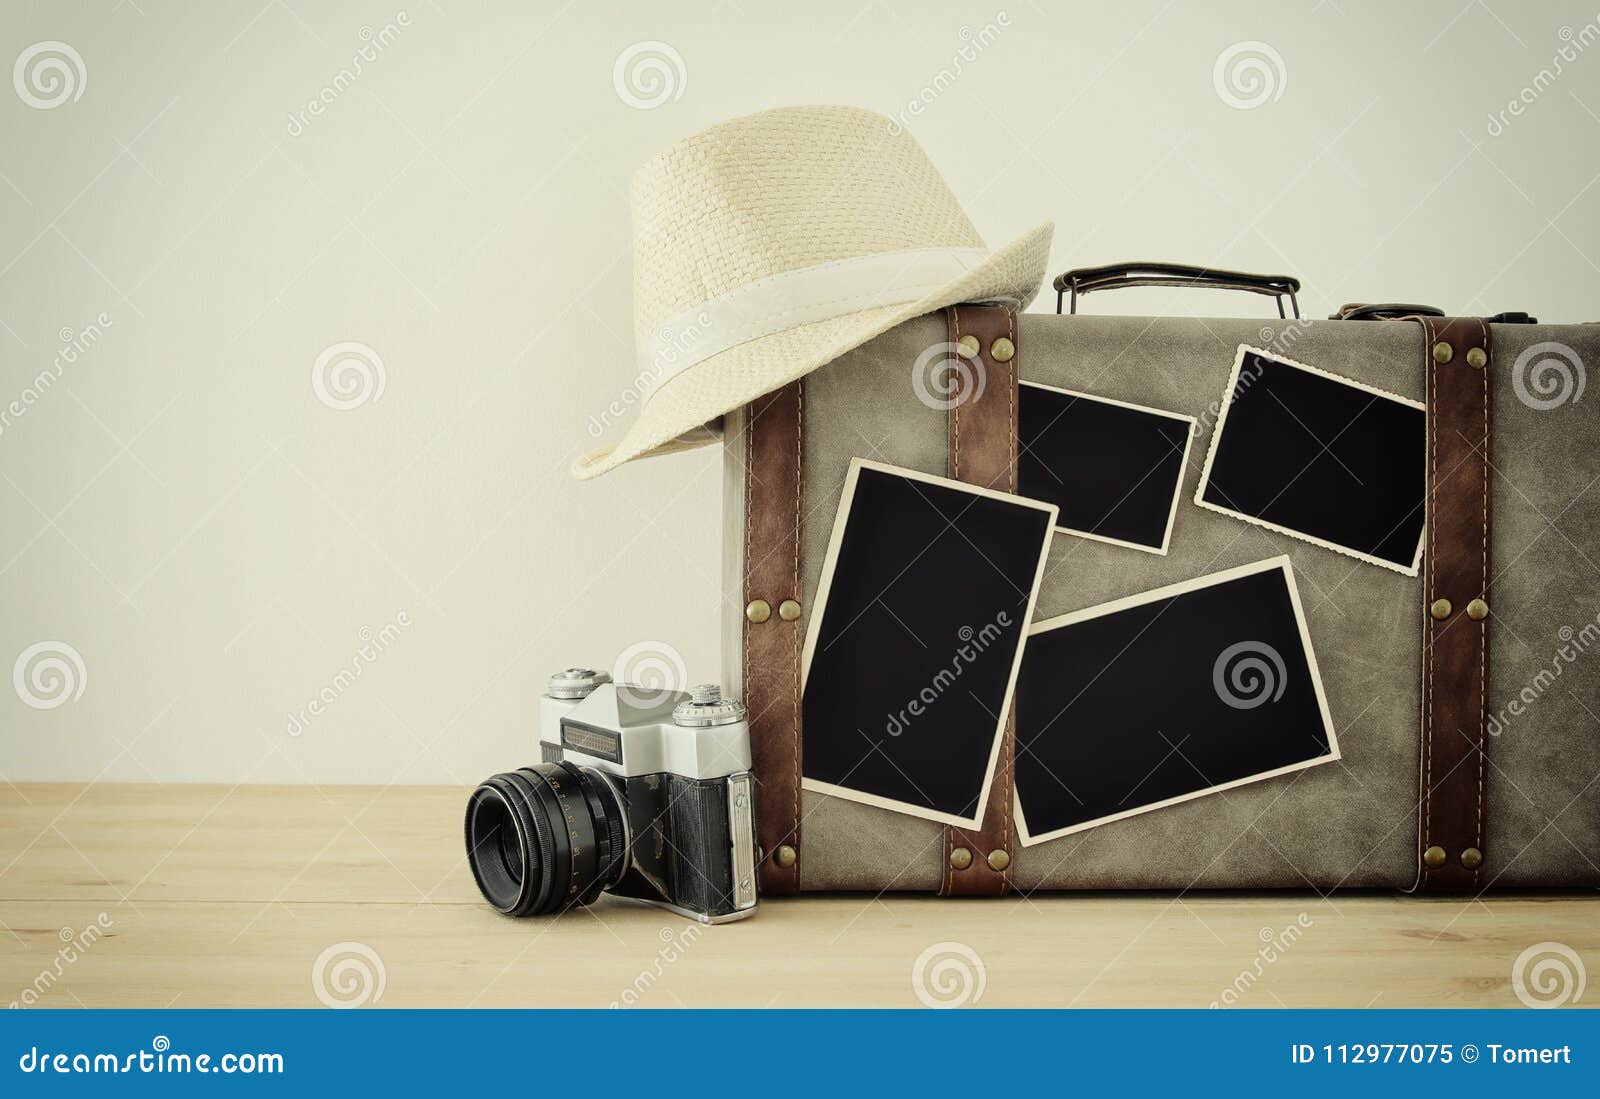 Download Image Of Old Vintage Luggage, Fedora Hat, Vintage Old ...